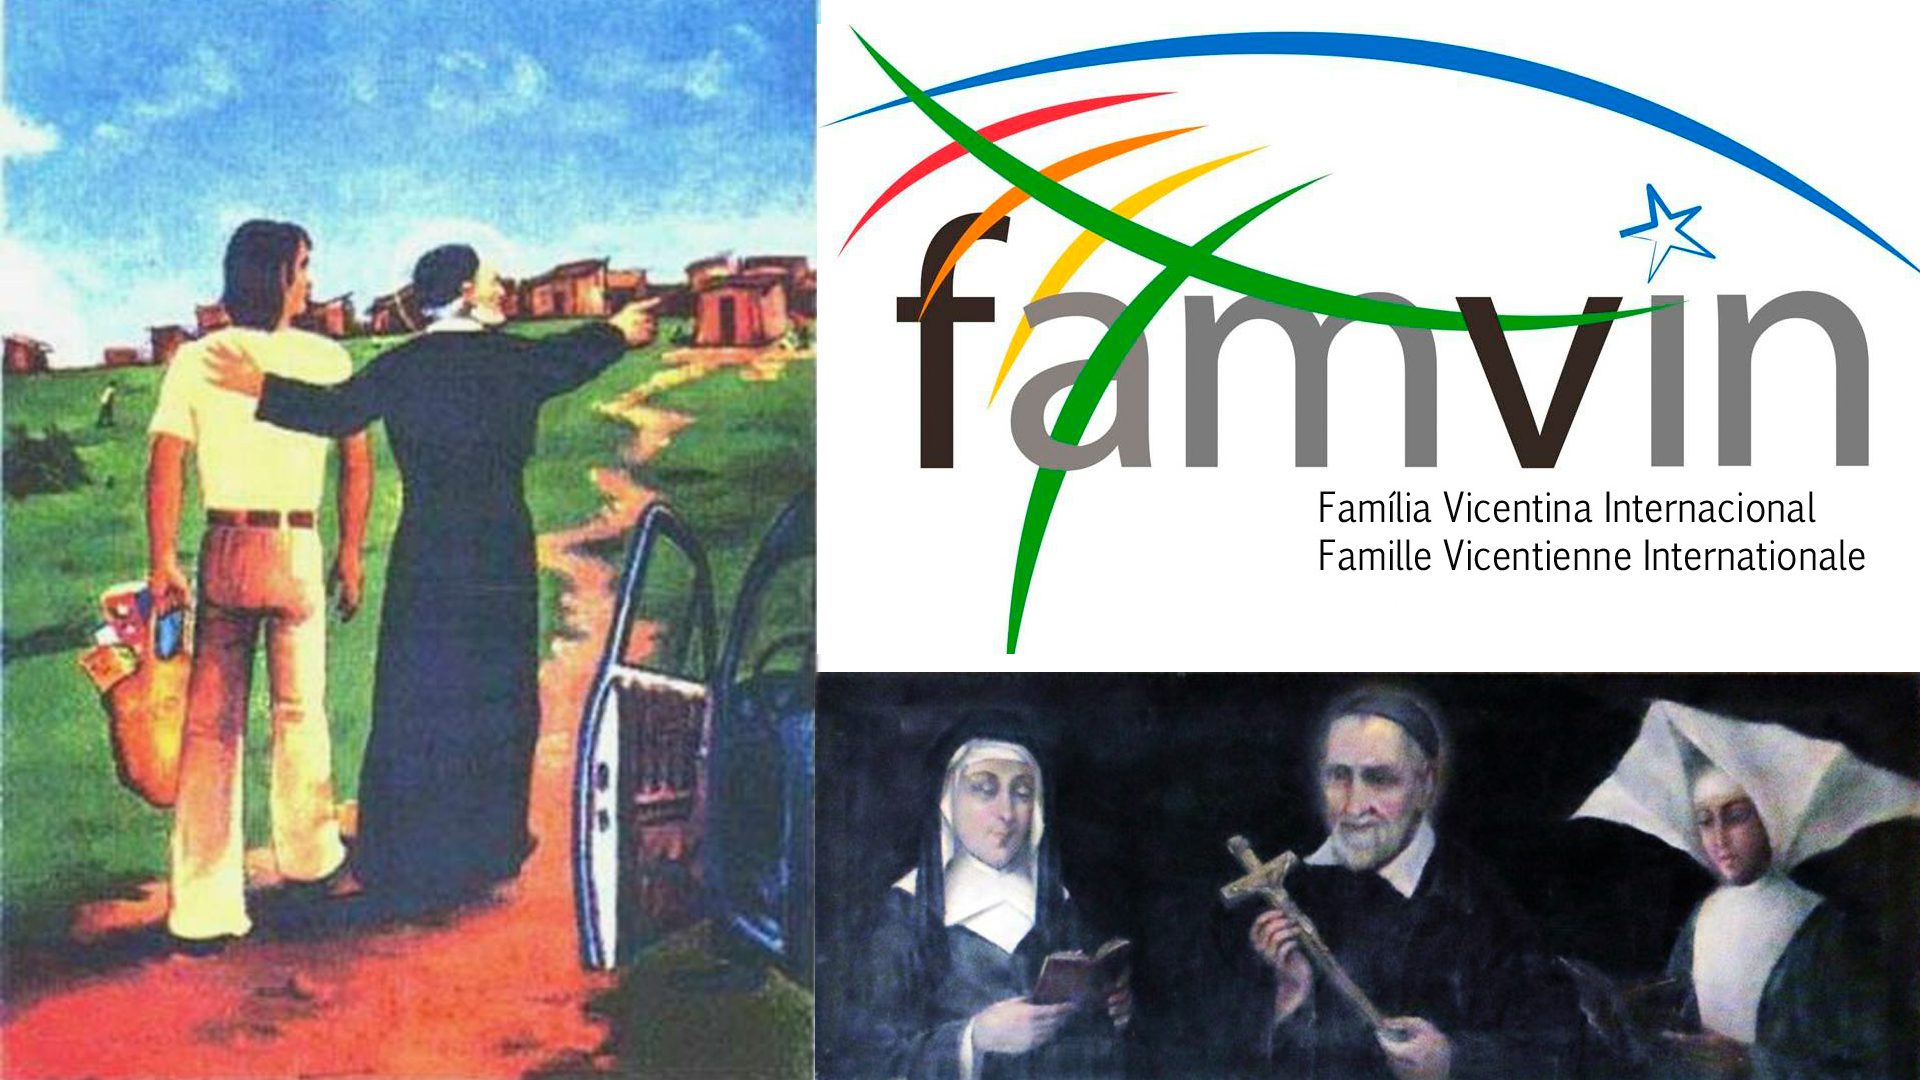 XV Encontro Nacional da Família Vicentina do Brasil começa nesta quinta-feira